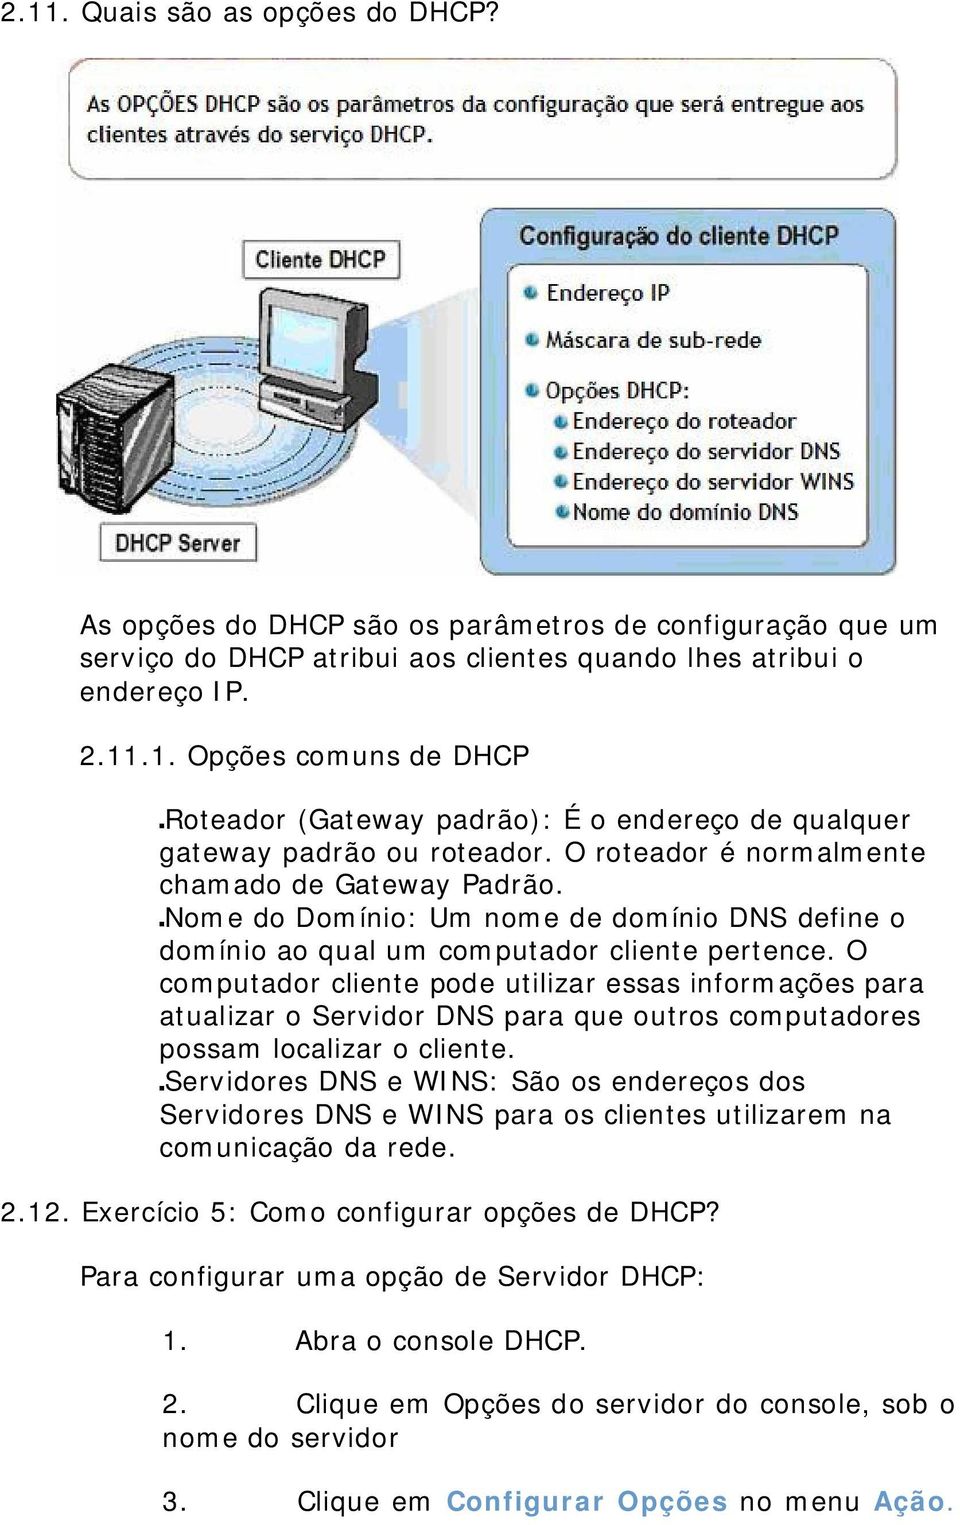 O computador cliente pode utilizar essas informações para atualizar o Servidor DNS para que outros computadores possam localizar o cliente.